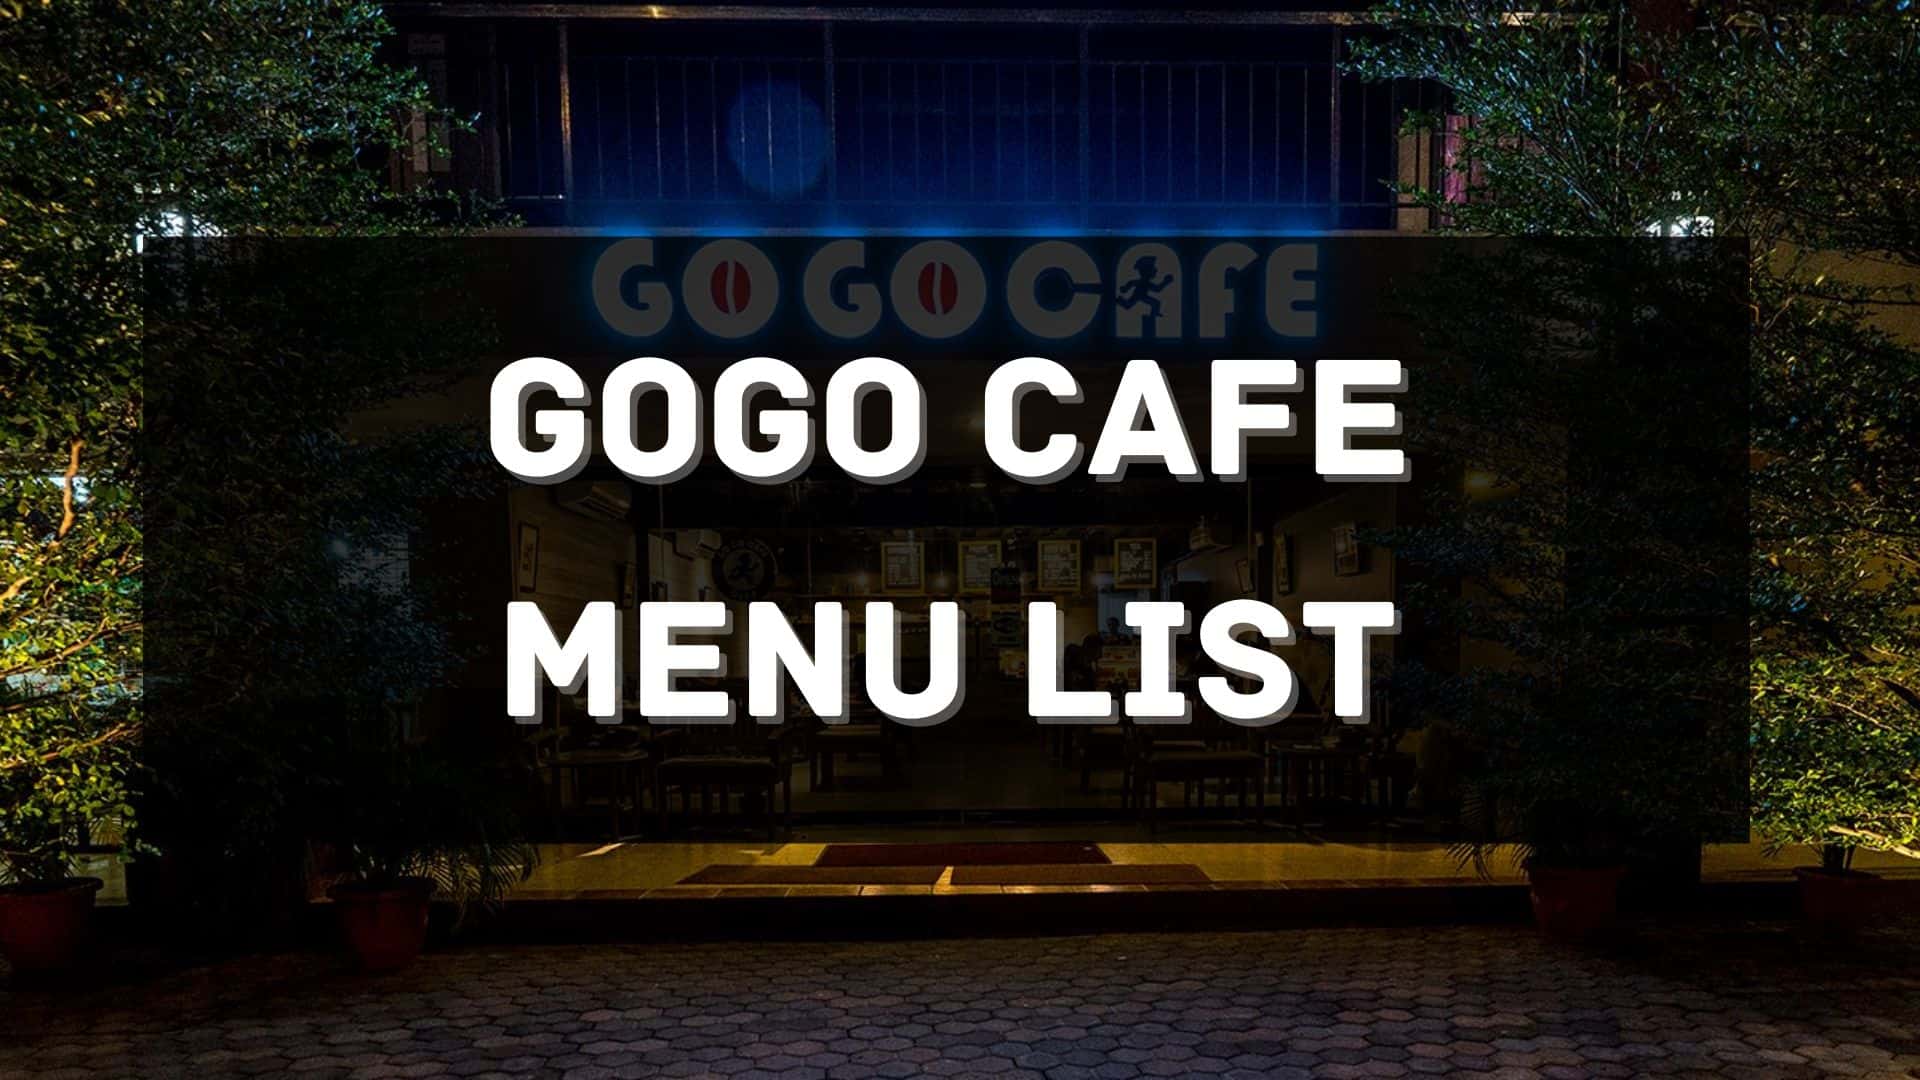 go go cafe menu prices philippines